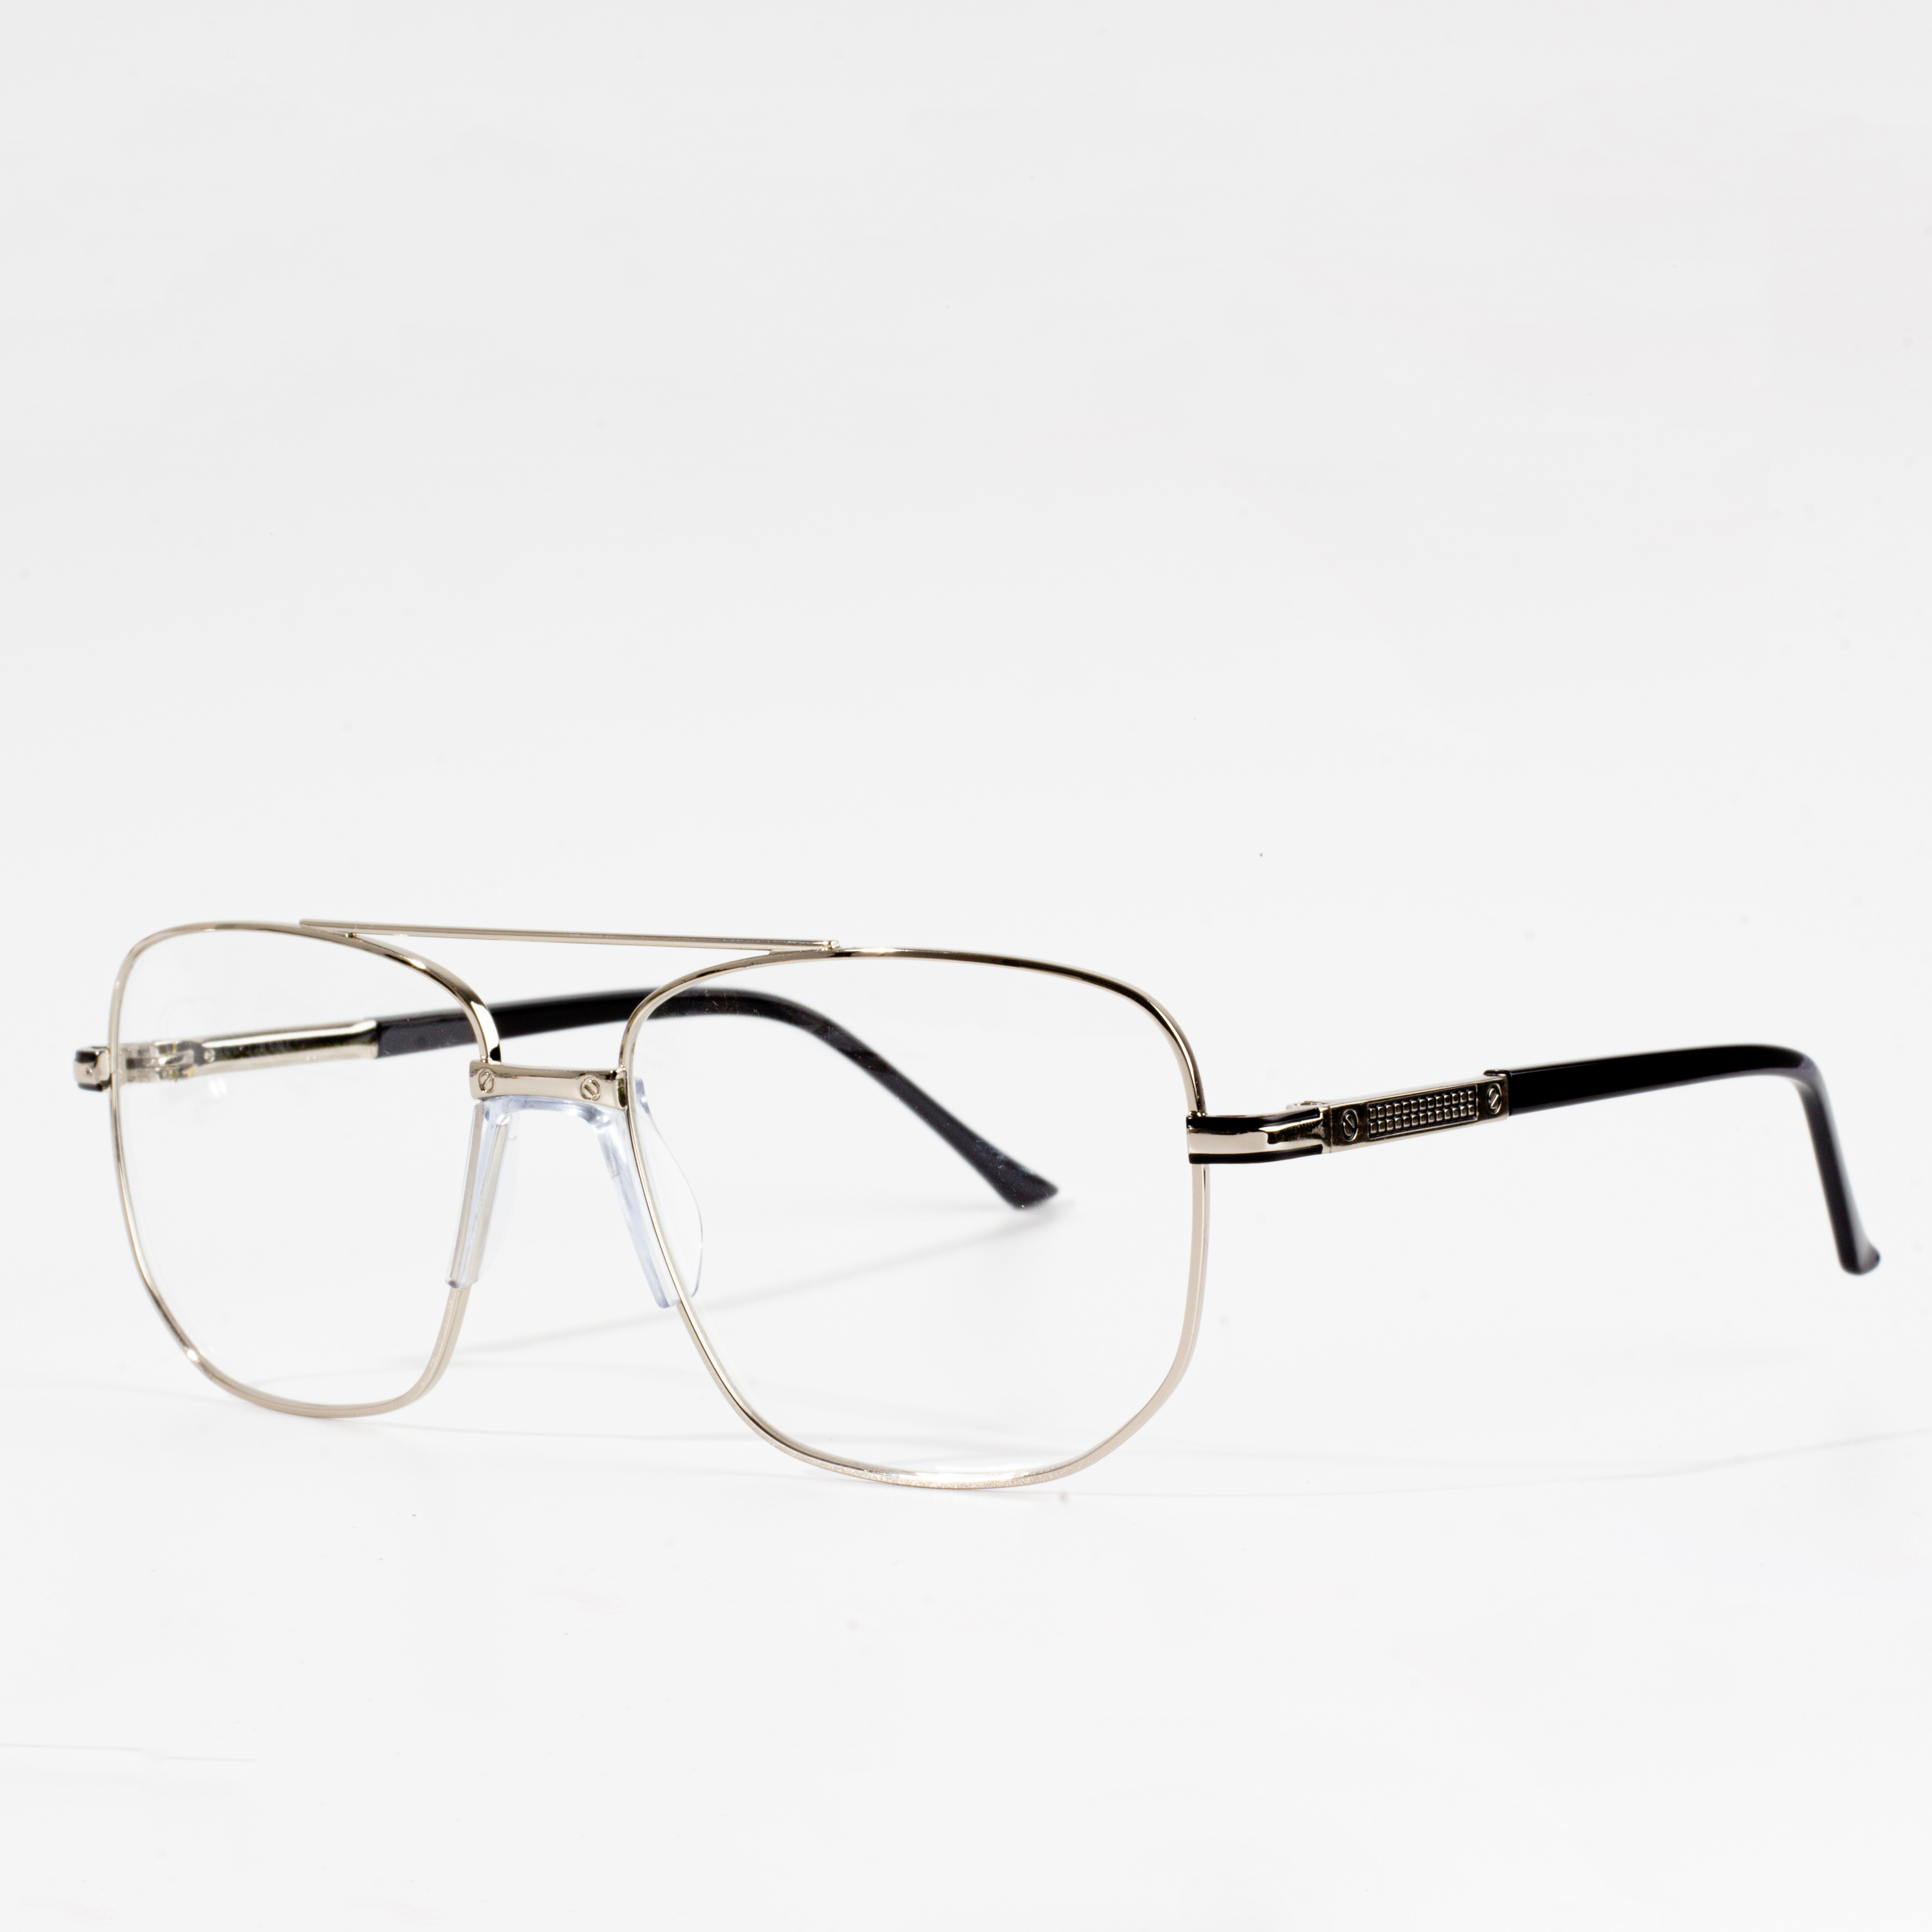 metal glasses frames